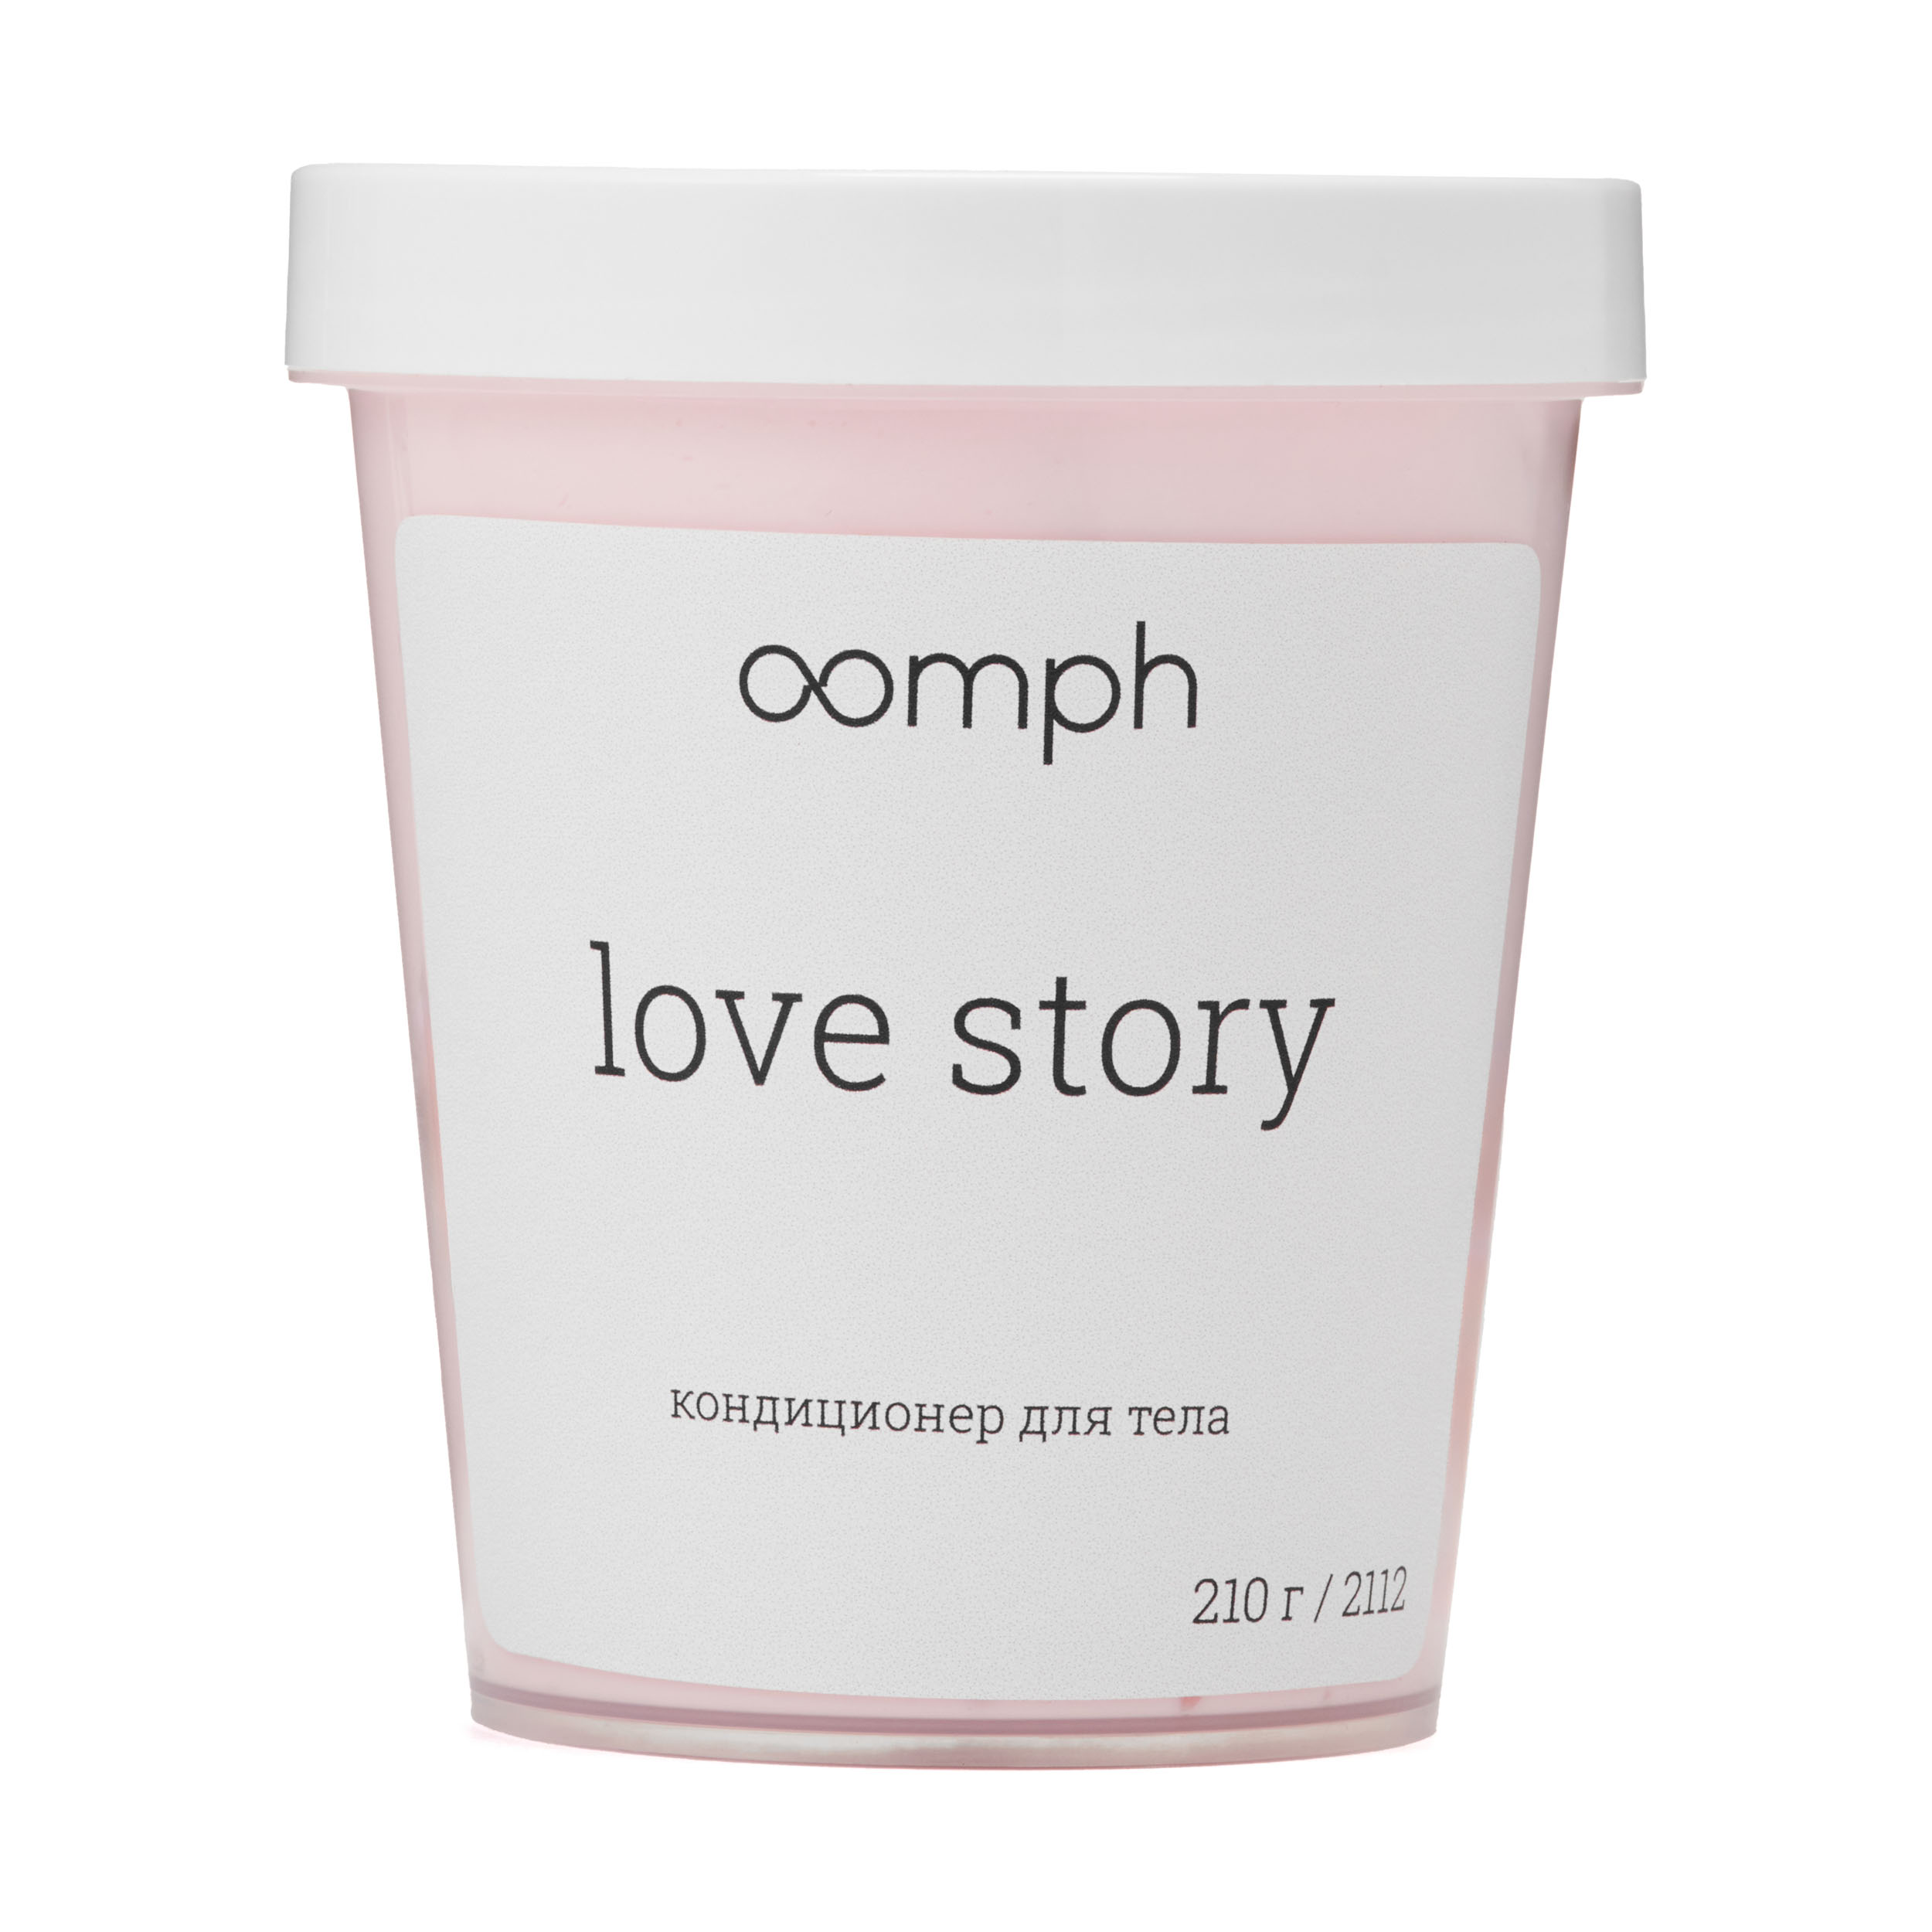 Кондиционер для тела OOMPH Love story 210г кондиционер для тела oomph love story 210г